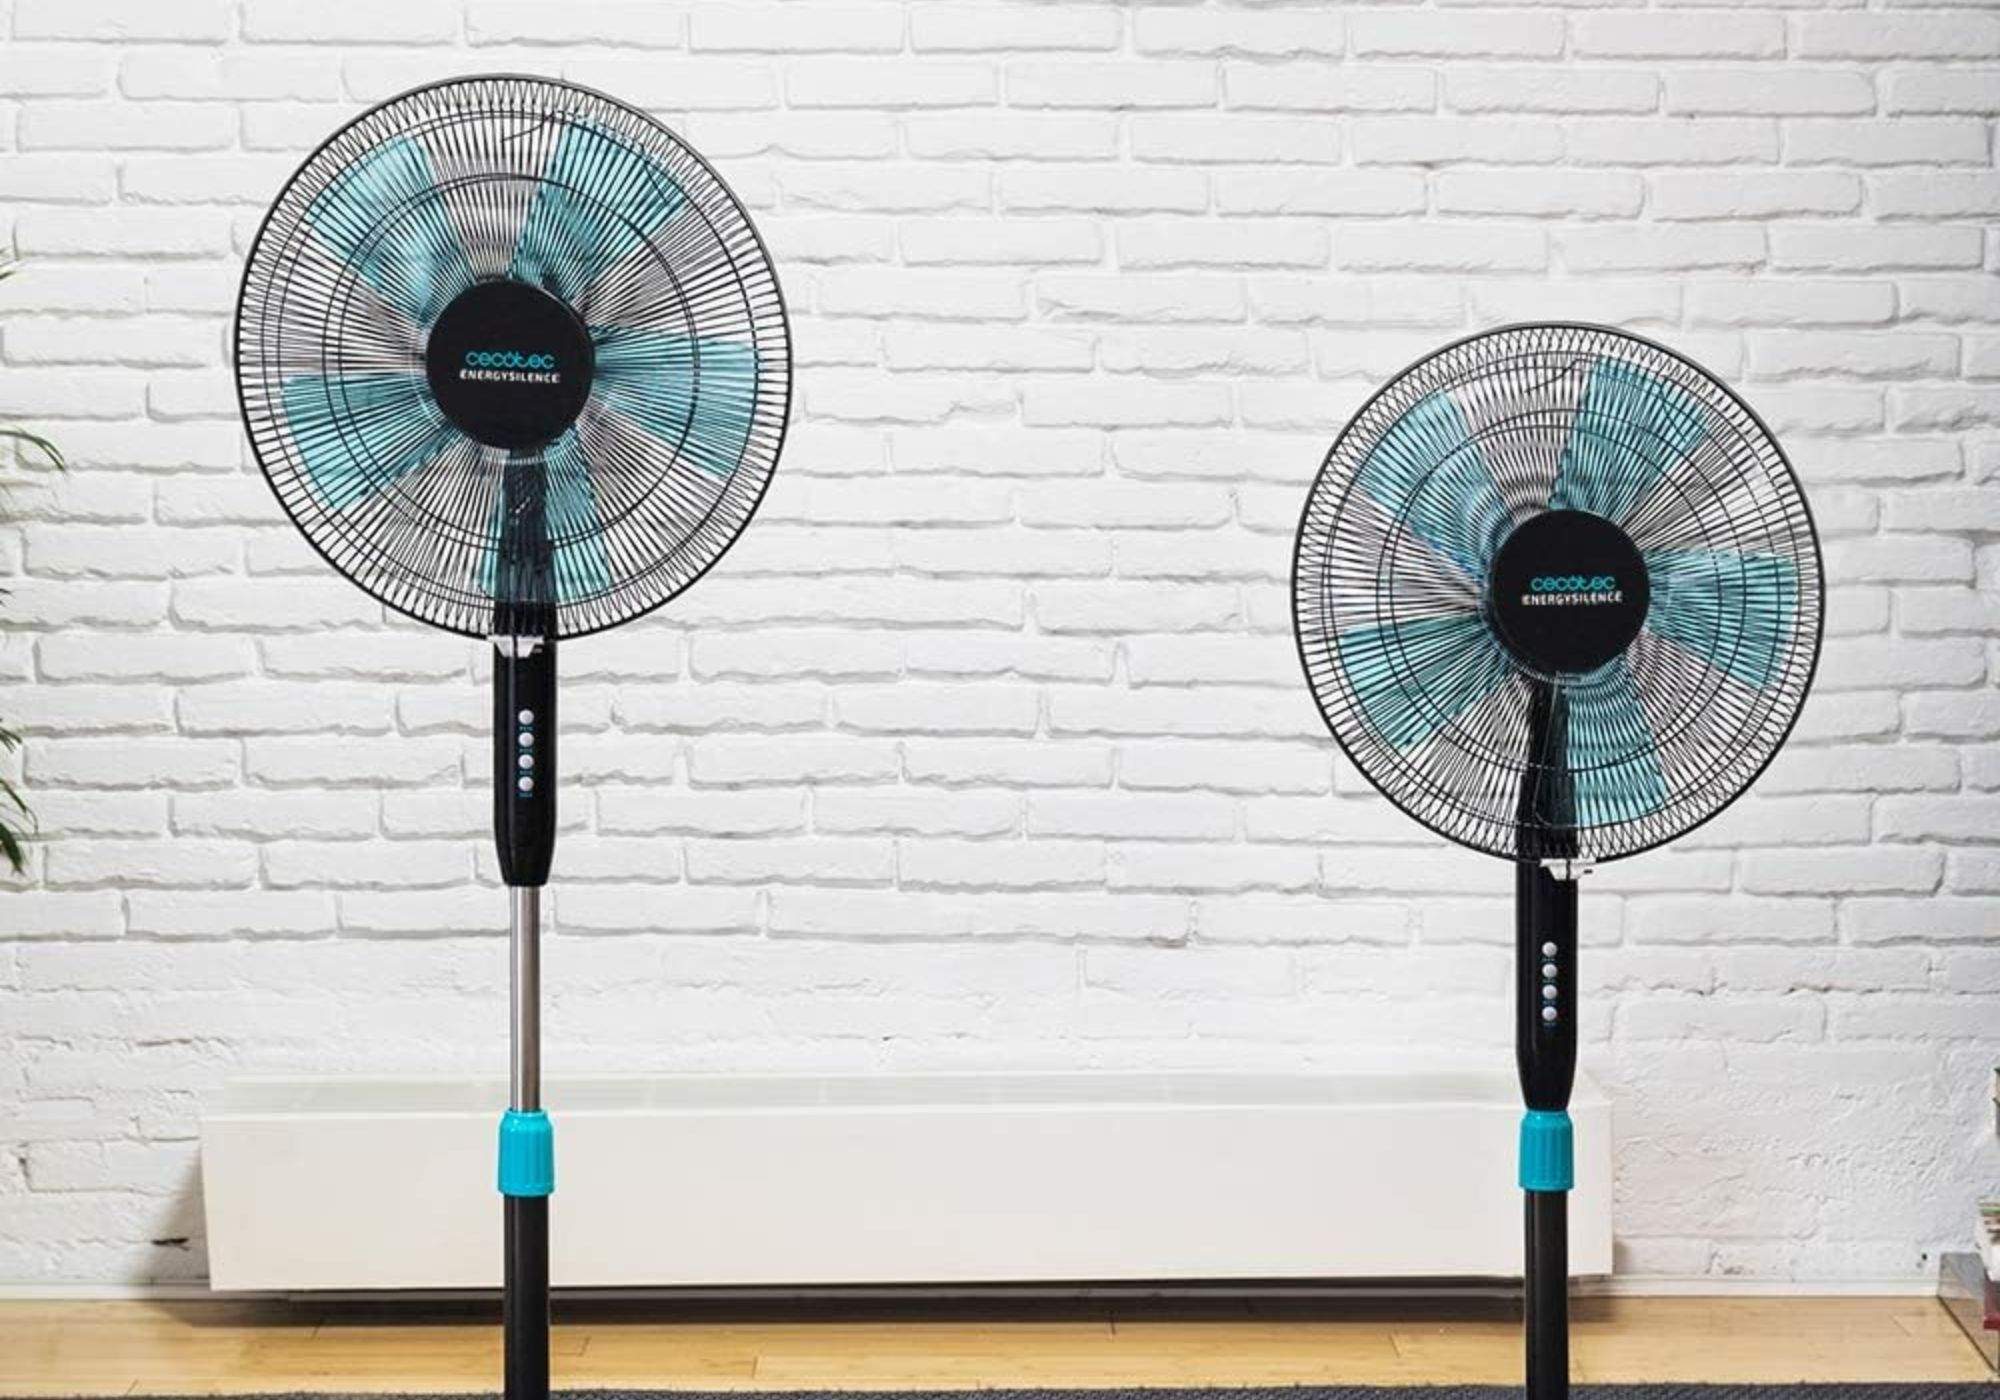 Prepara't per a l'estiu i aconsegueix aquest ventilador amb peu per menys de 25 € a Amazon